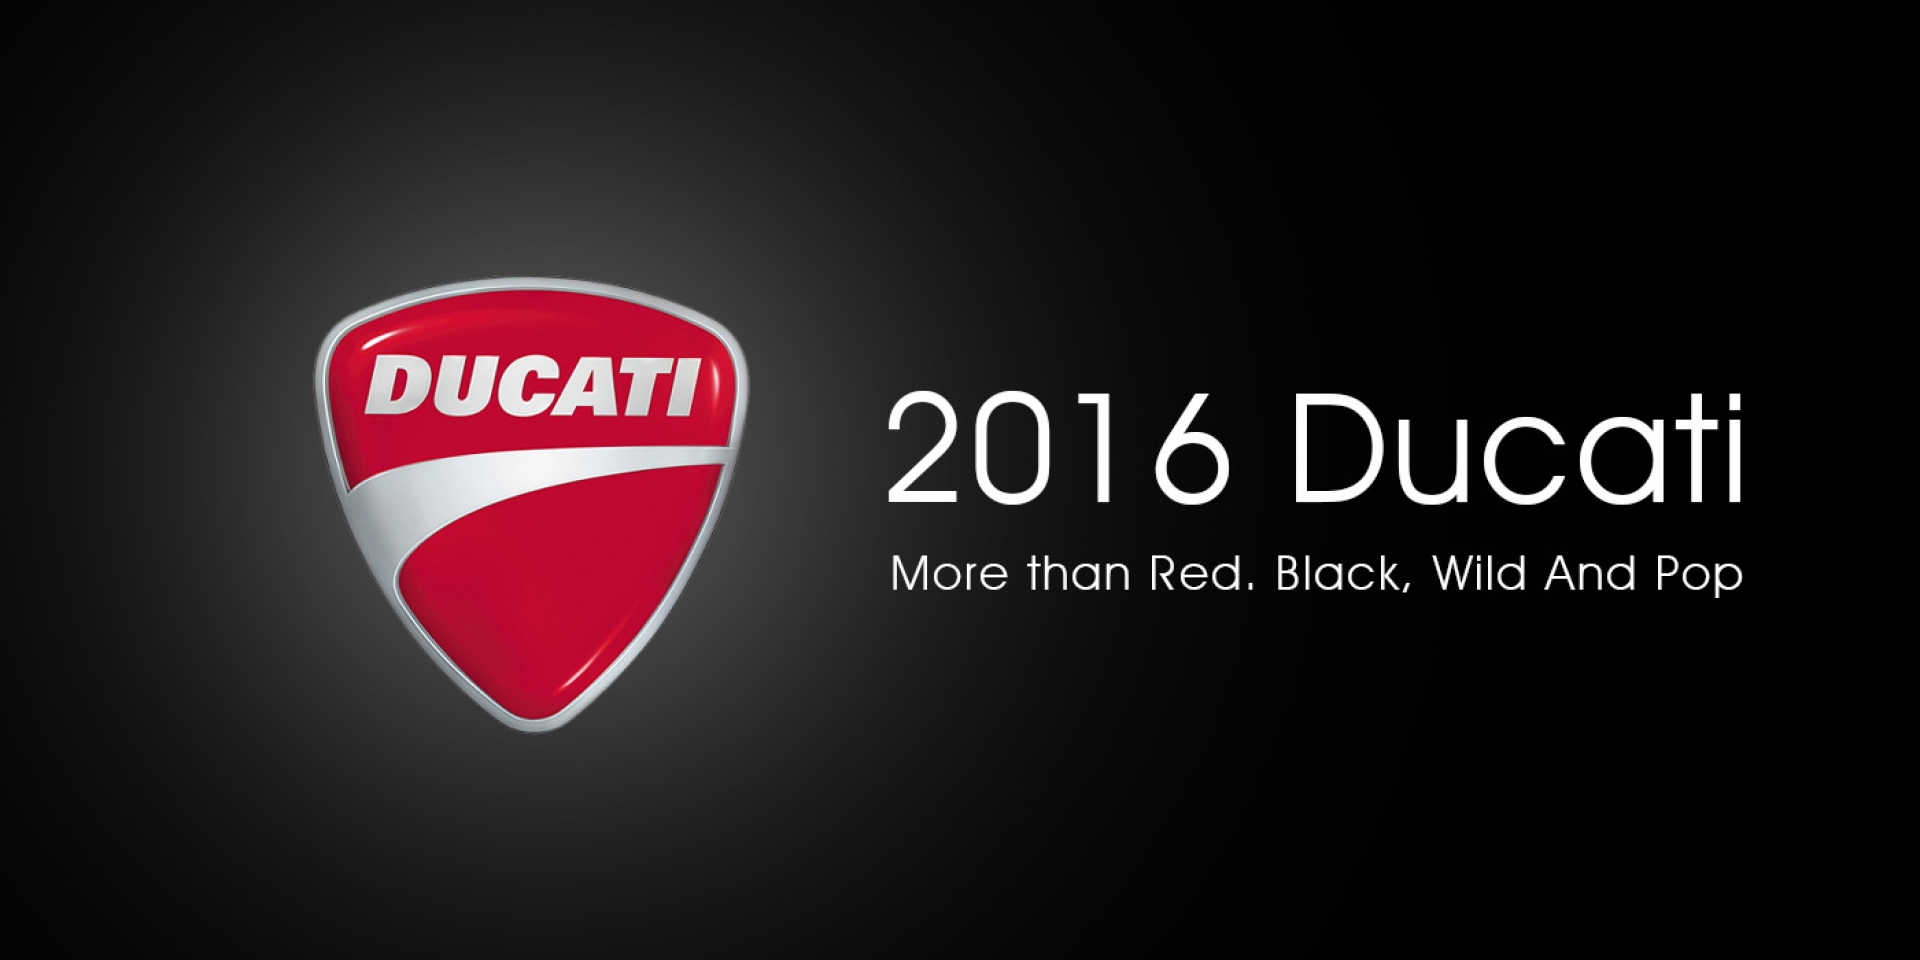 2016 DUCATI 新車。今夜直播登場